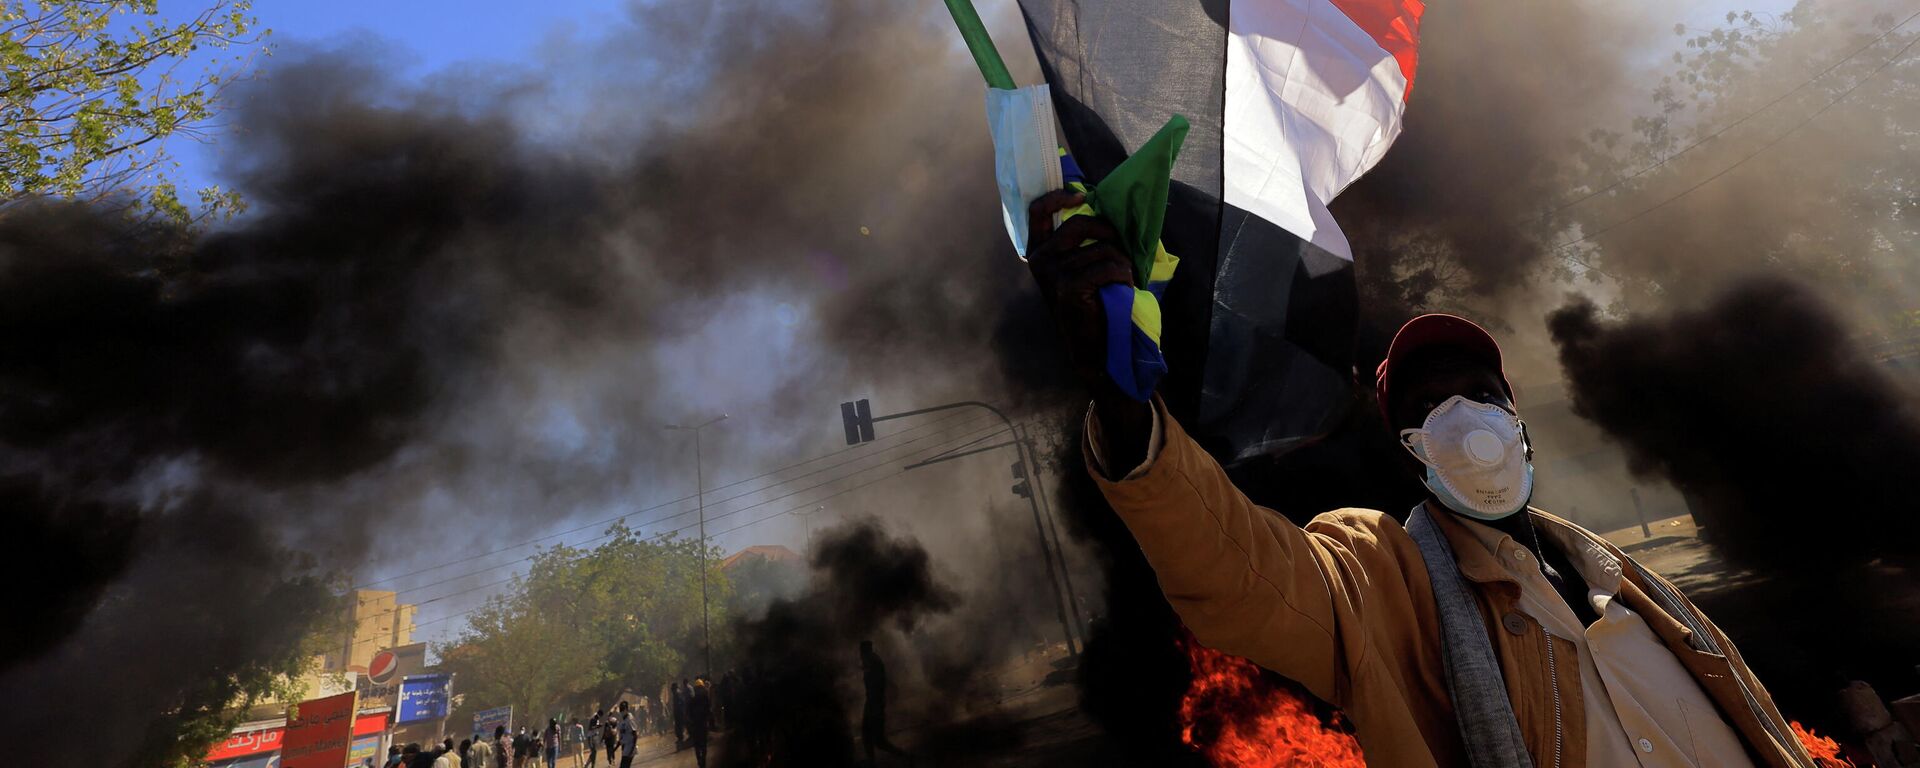 متظاهر في السودان يرفع علم بلاده أثناء احتجاجات الجمعة 31 ديسمبر  - سبوتنيك عربي, 1920, 26.02.2022